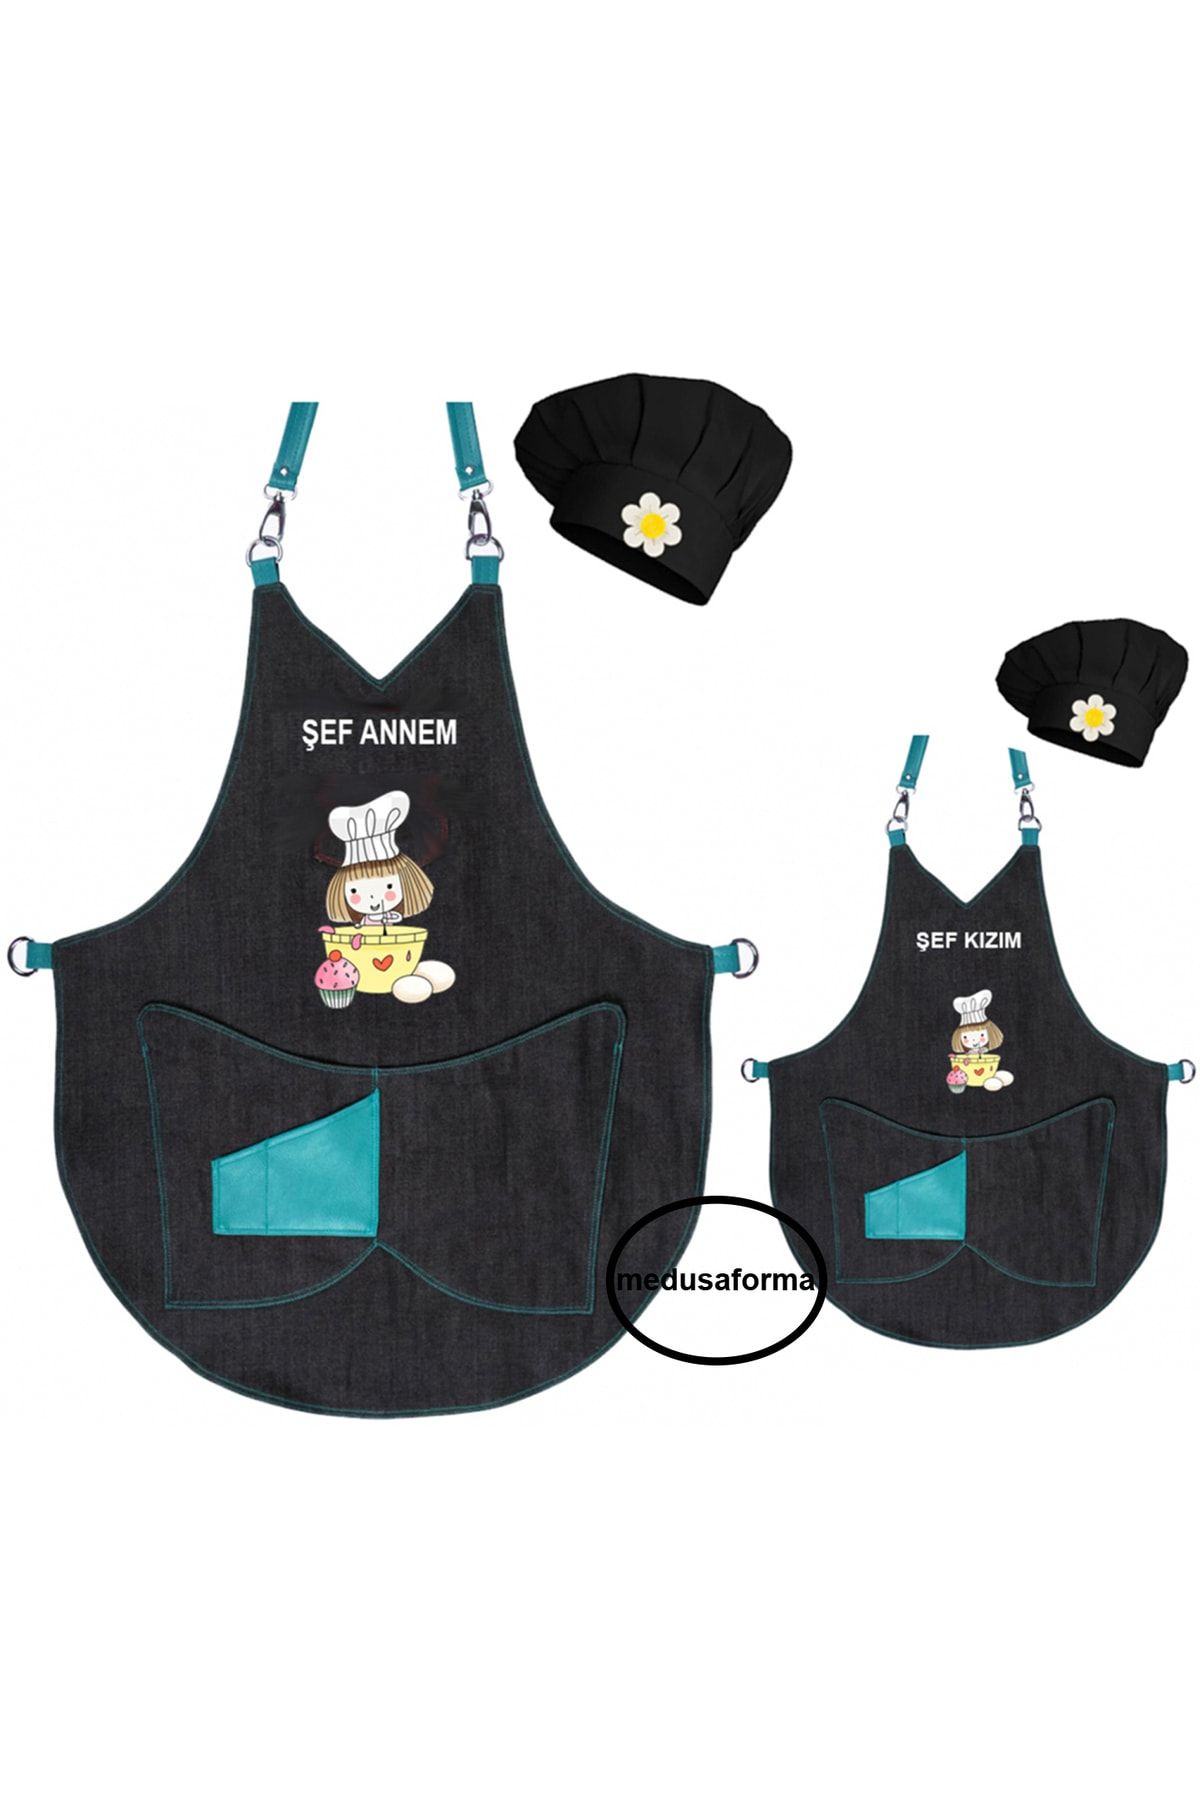 medusaforma Anne Kız Önlük Takım Çocuk Aşçı Kıyafeti Master Şef Mutfak Önlüğü Şef Önlük Kombinleri - Turkuaz